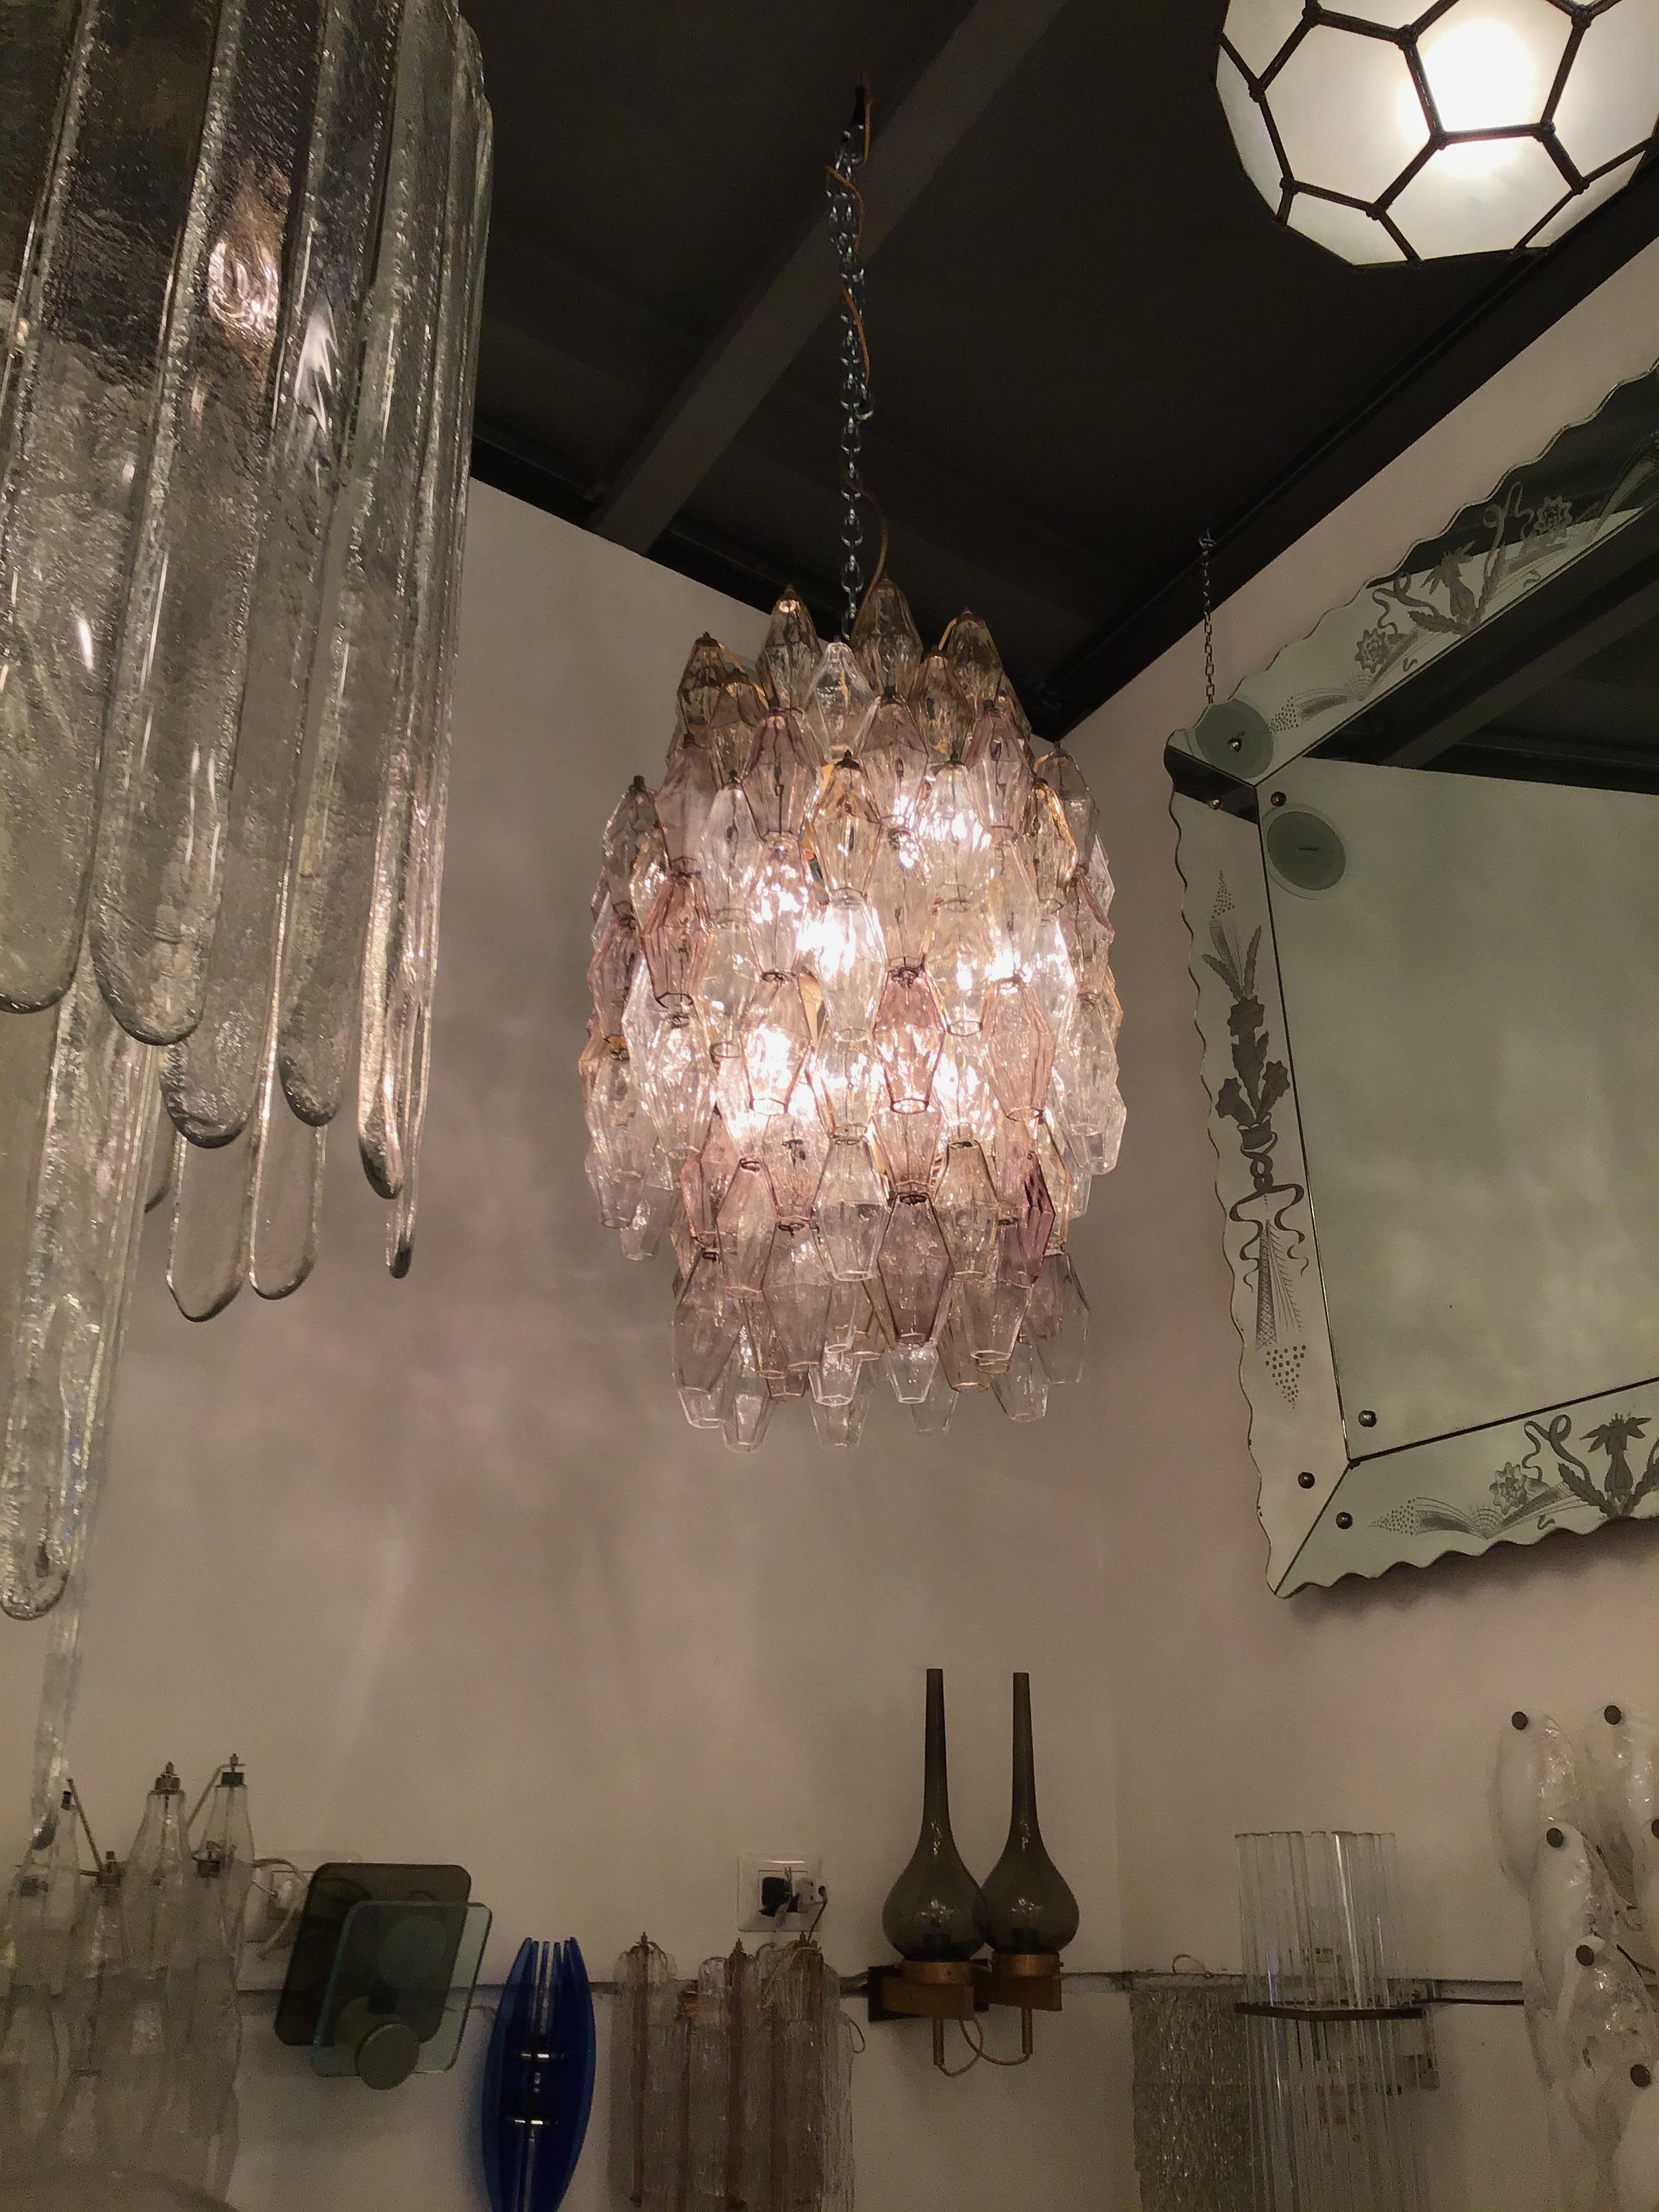 VENINI chandelier Murano glass CARLO SCARPA Poliedri 1955 iron ,
Made in Italy.